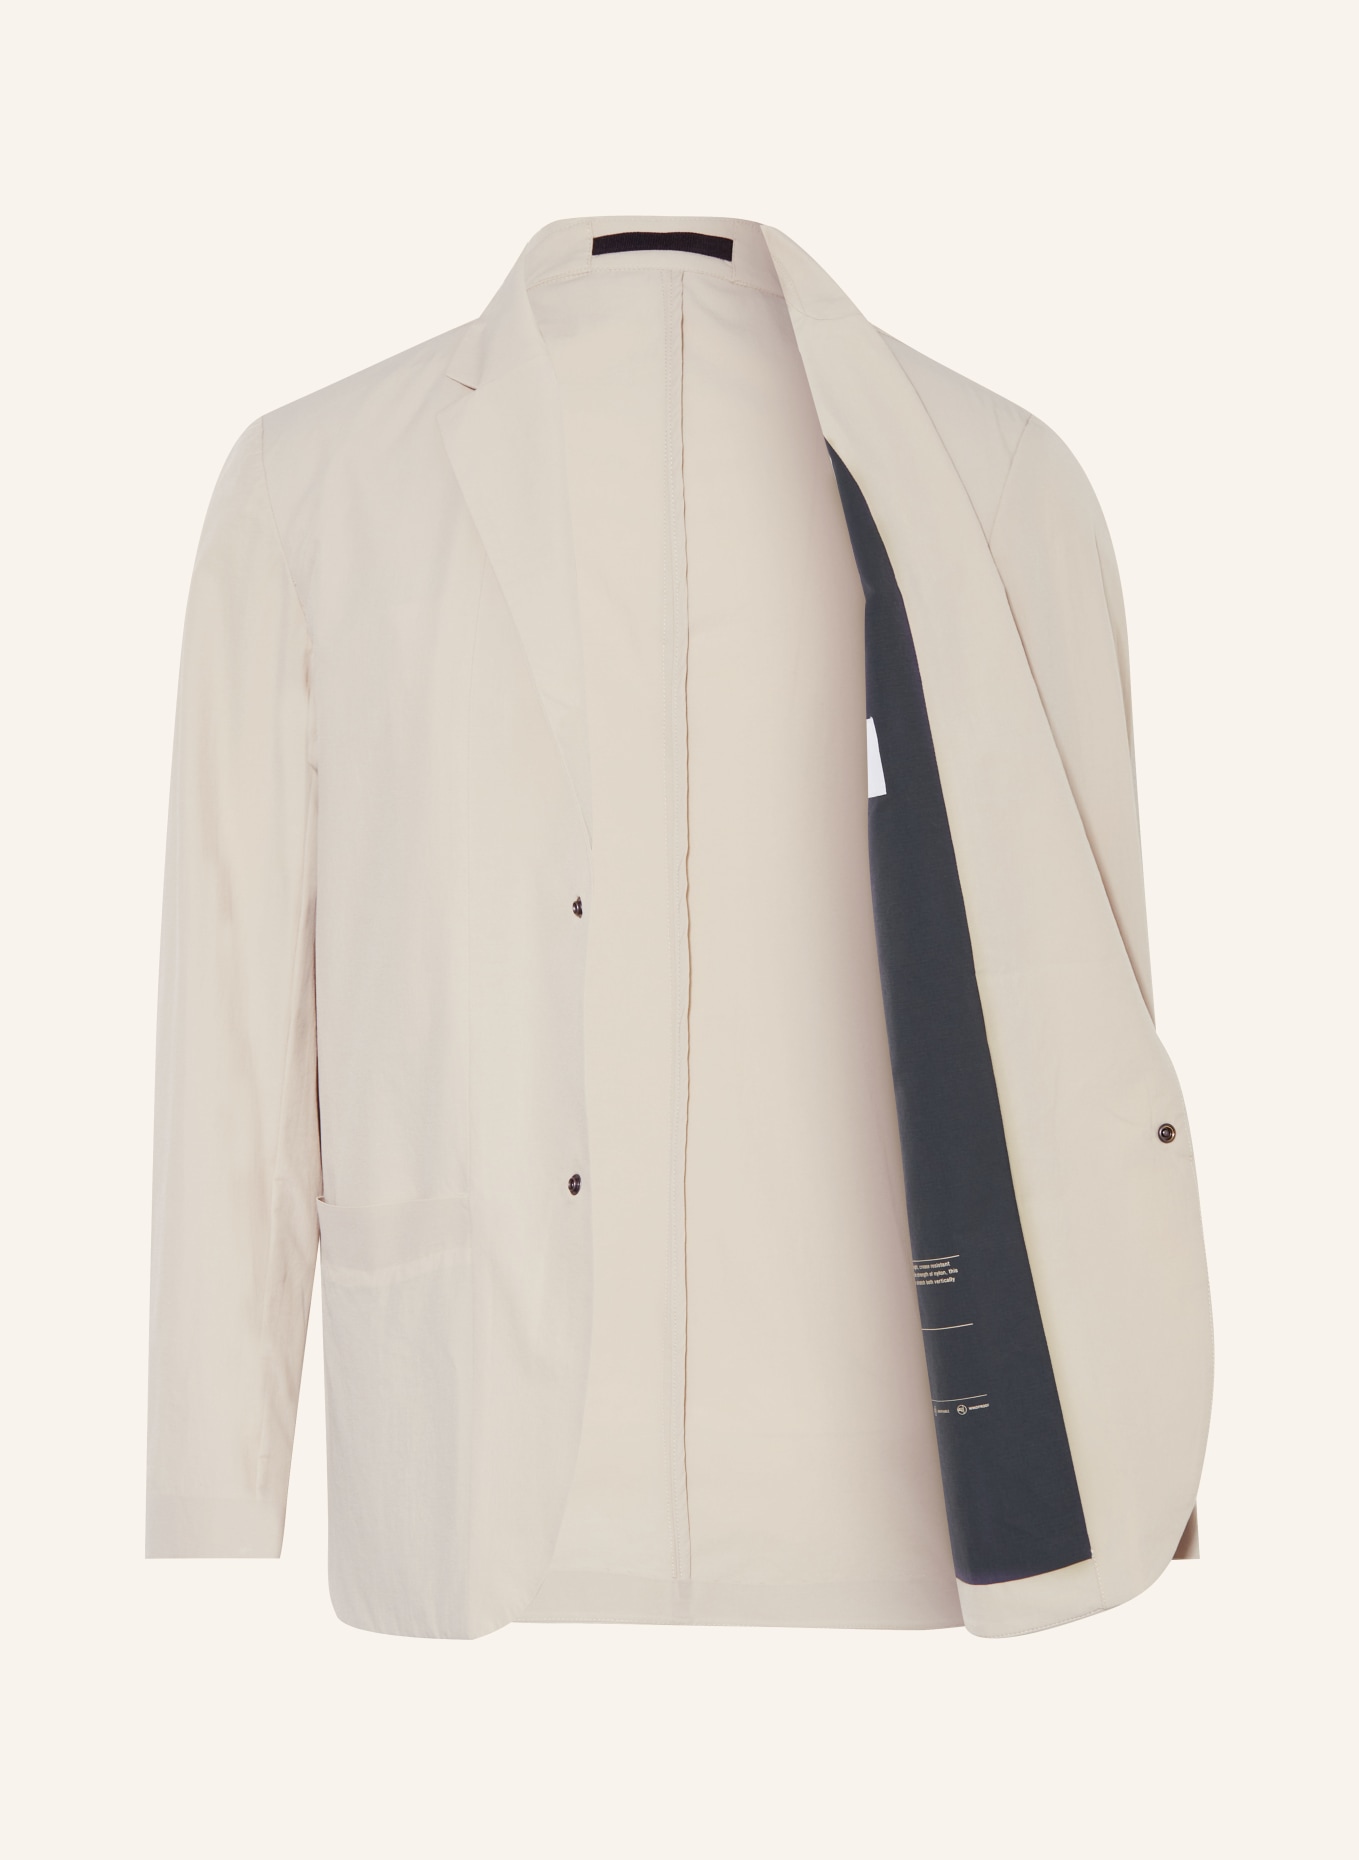 NORSE PROJECTS Suit jacket EMIL regular fit, Color: 0920 Light Khaki (Image 4)